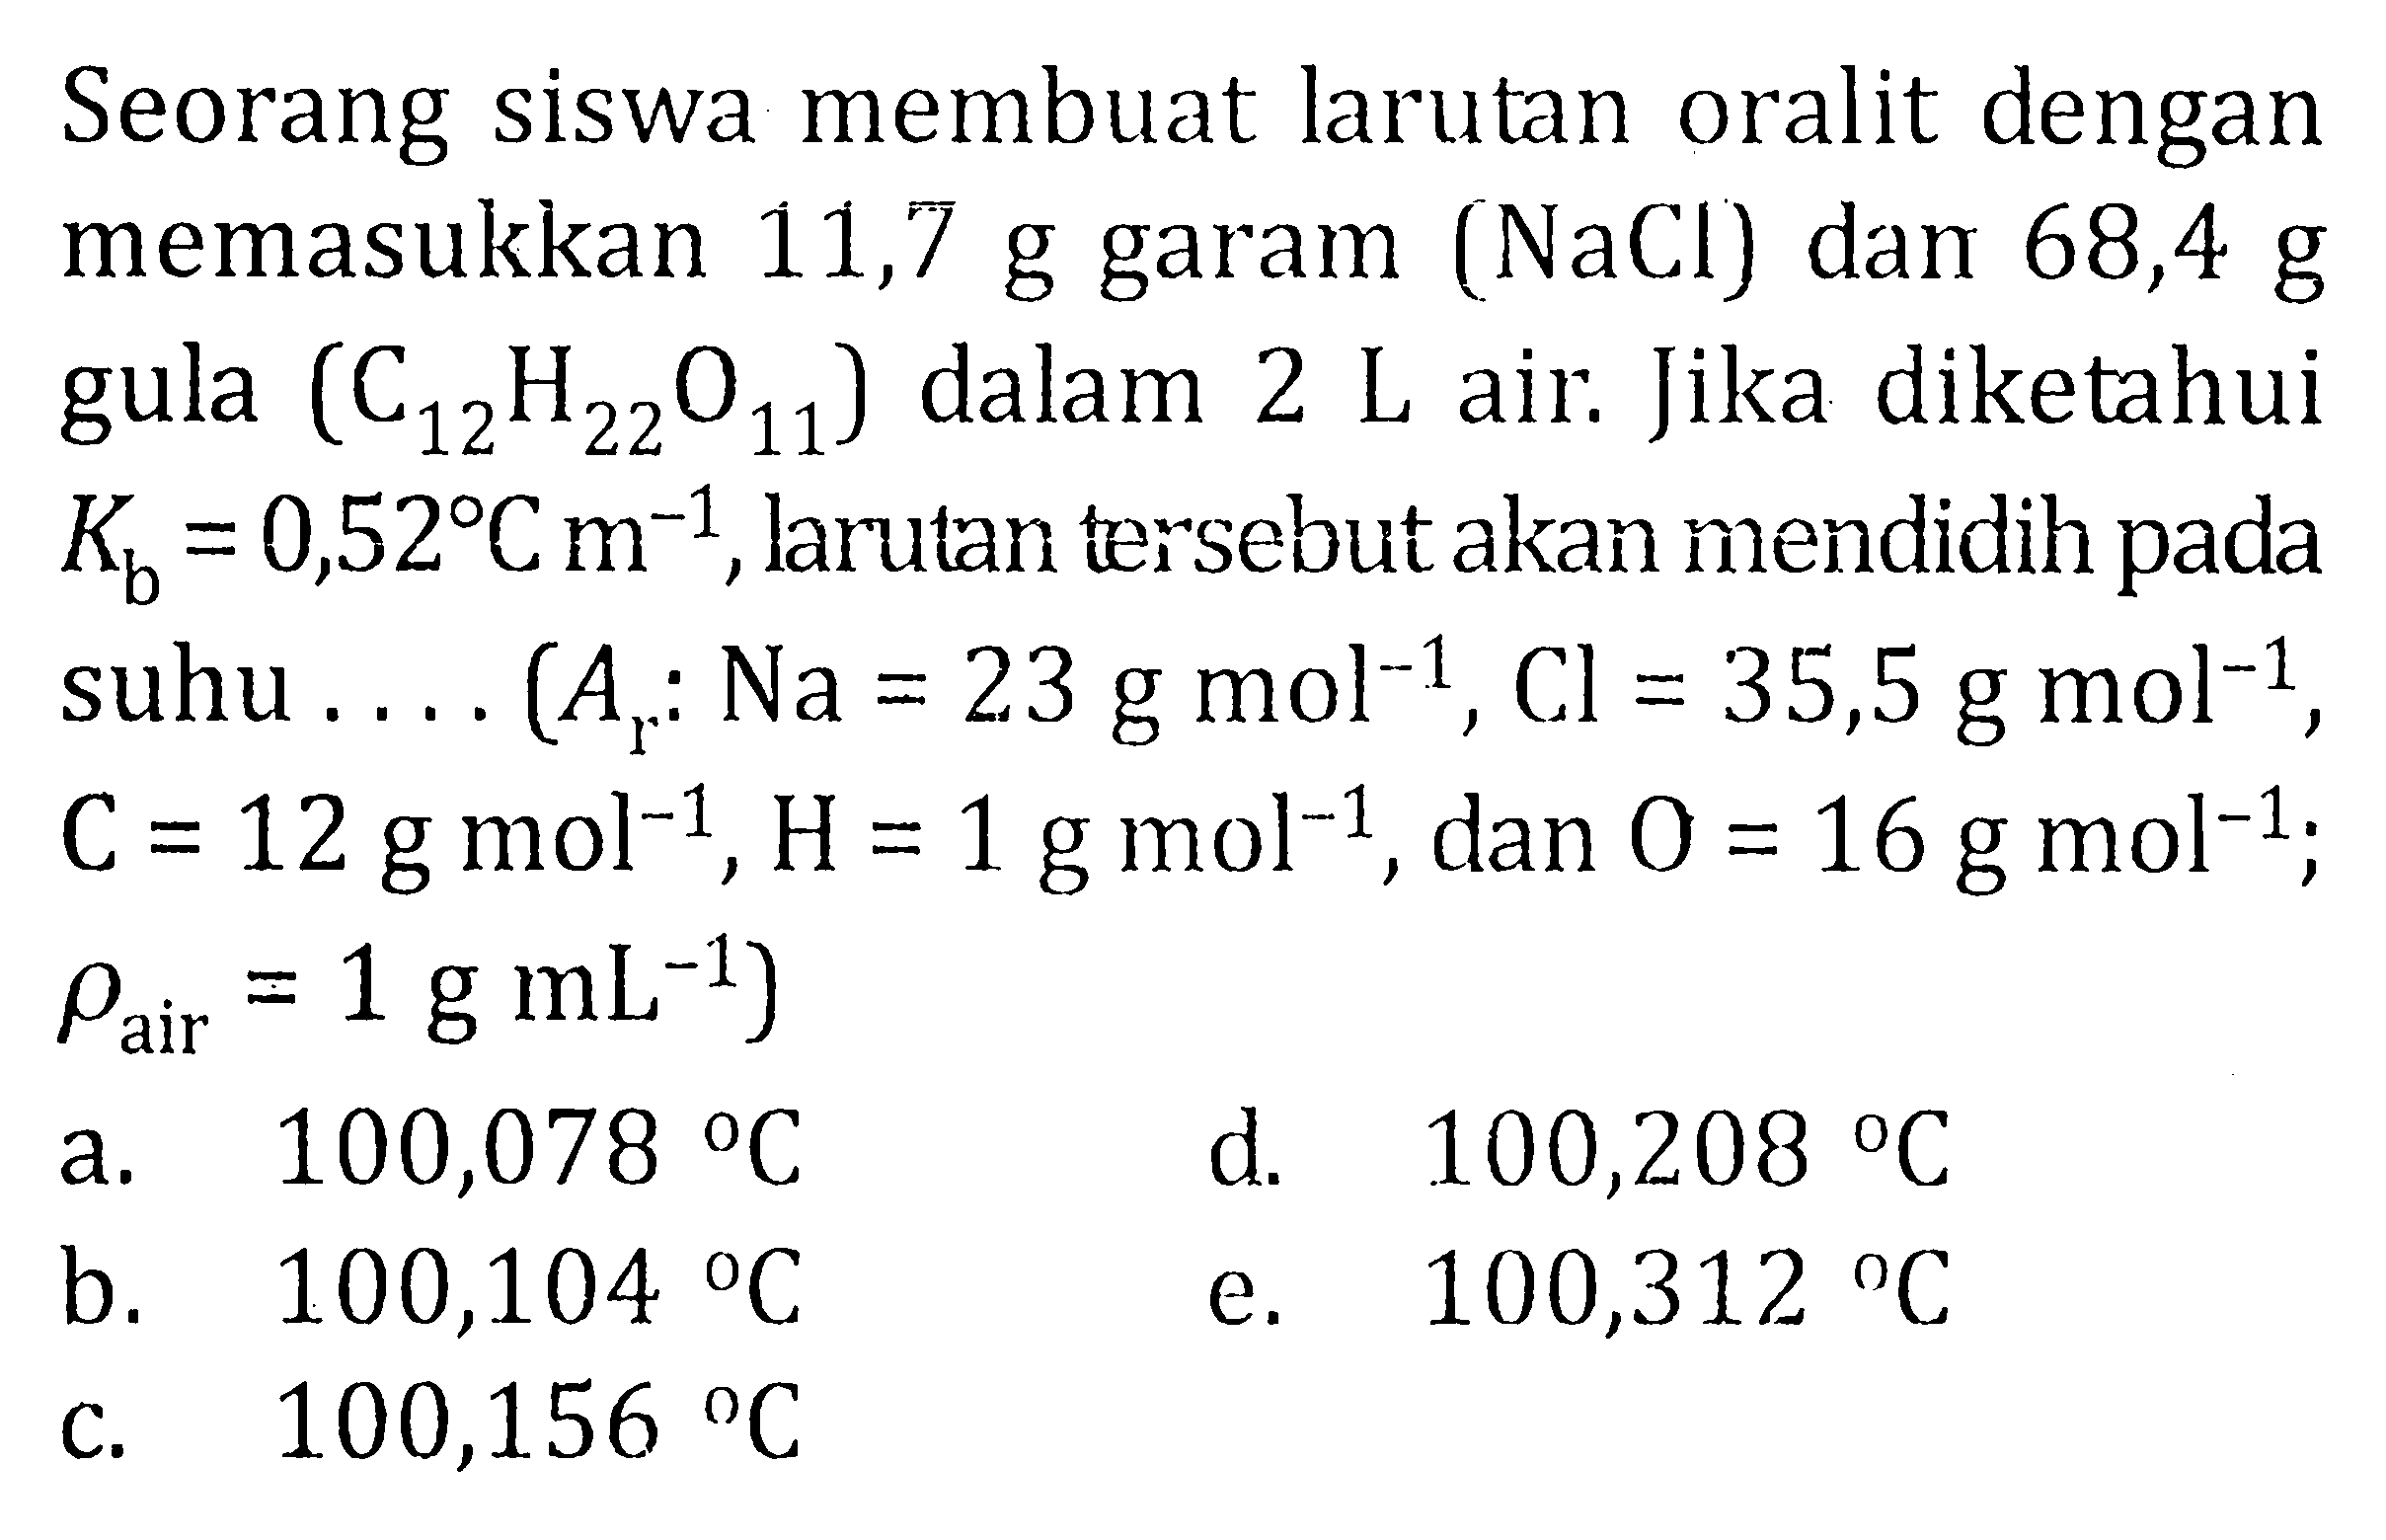 Seorang siswa membuat larutan oralit dengan memasukkan 11,7 g garam (NaCl) dan 68,4 g gula (C12H22O11) dalam 2 L air. Jika diketahui Kb = 0,52 C m^(-1), larulan tersebut akan mendidih pada suhu .... (Ar : Na = 23 g mol^(-1), Cl = 35,5 g mol^(-1), C= 12 g mol^(-1), H = 1 g mol^(-1), dan O = 16 g mol^(-1); rho air = 1 g mL^(-1))